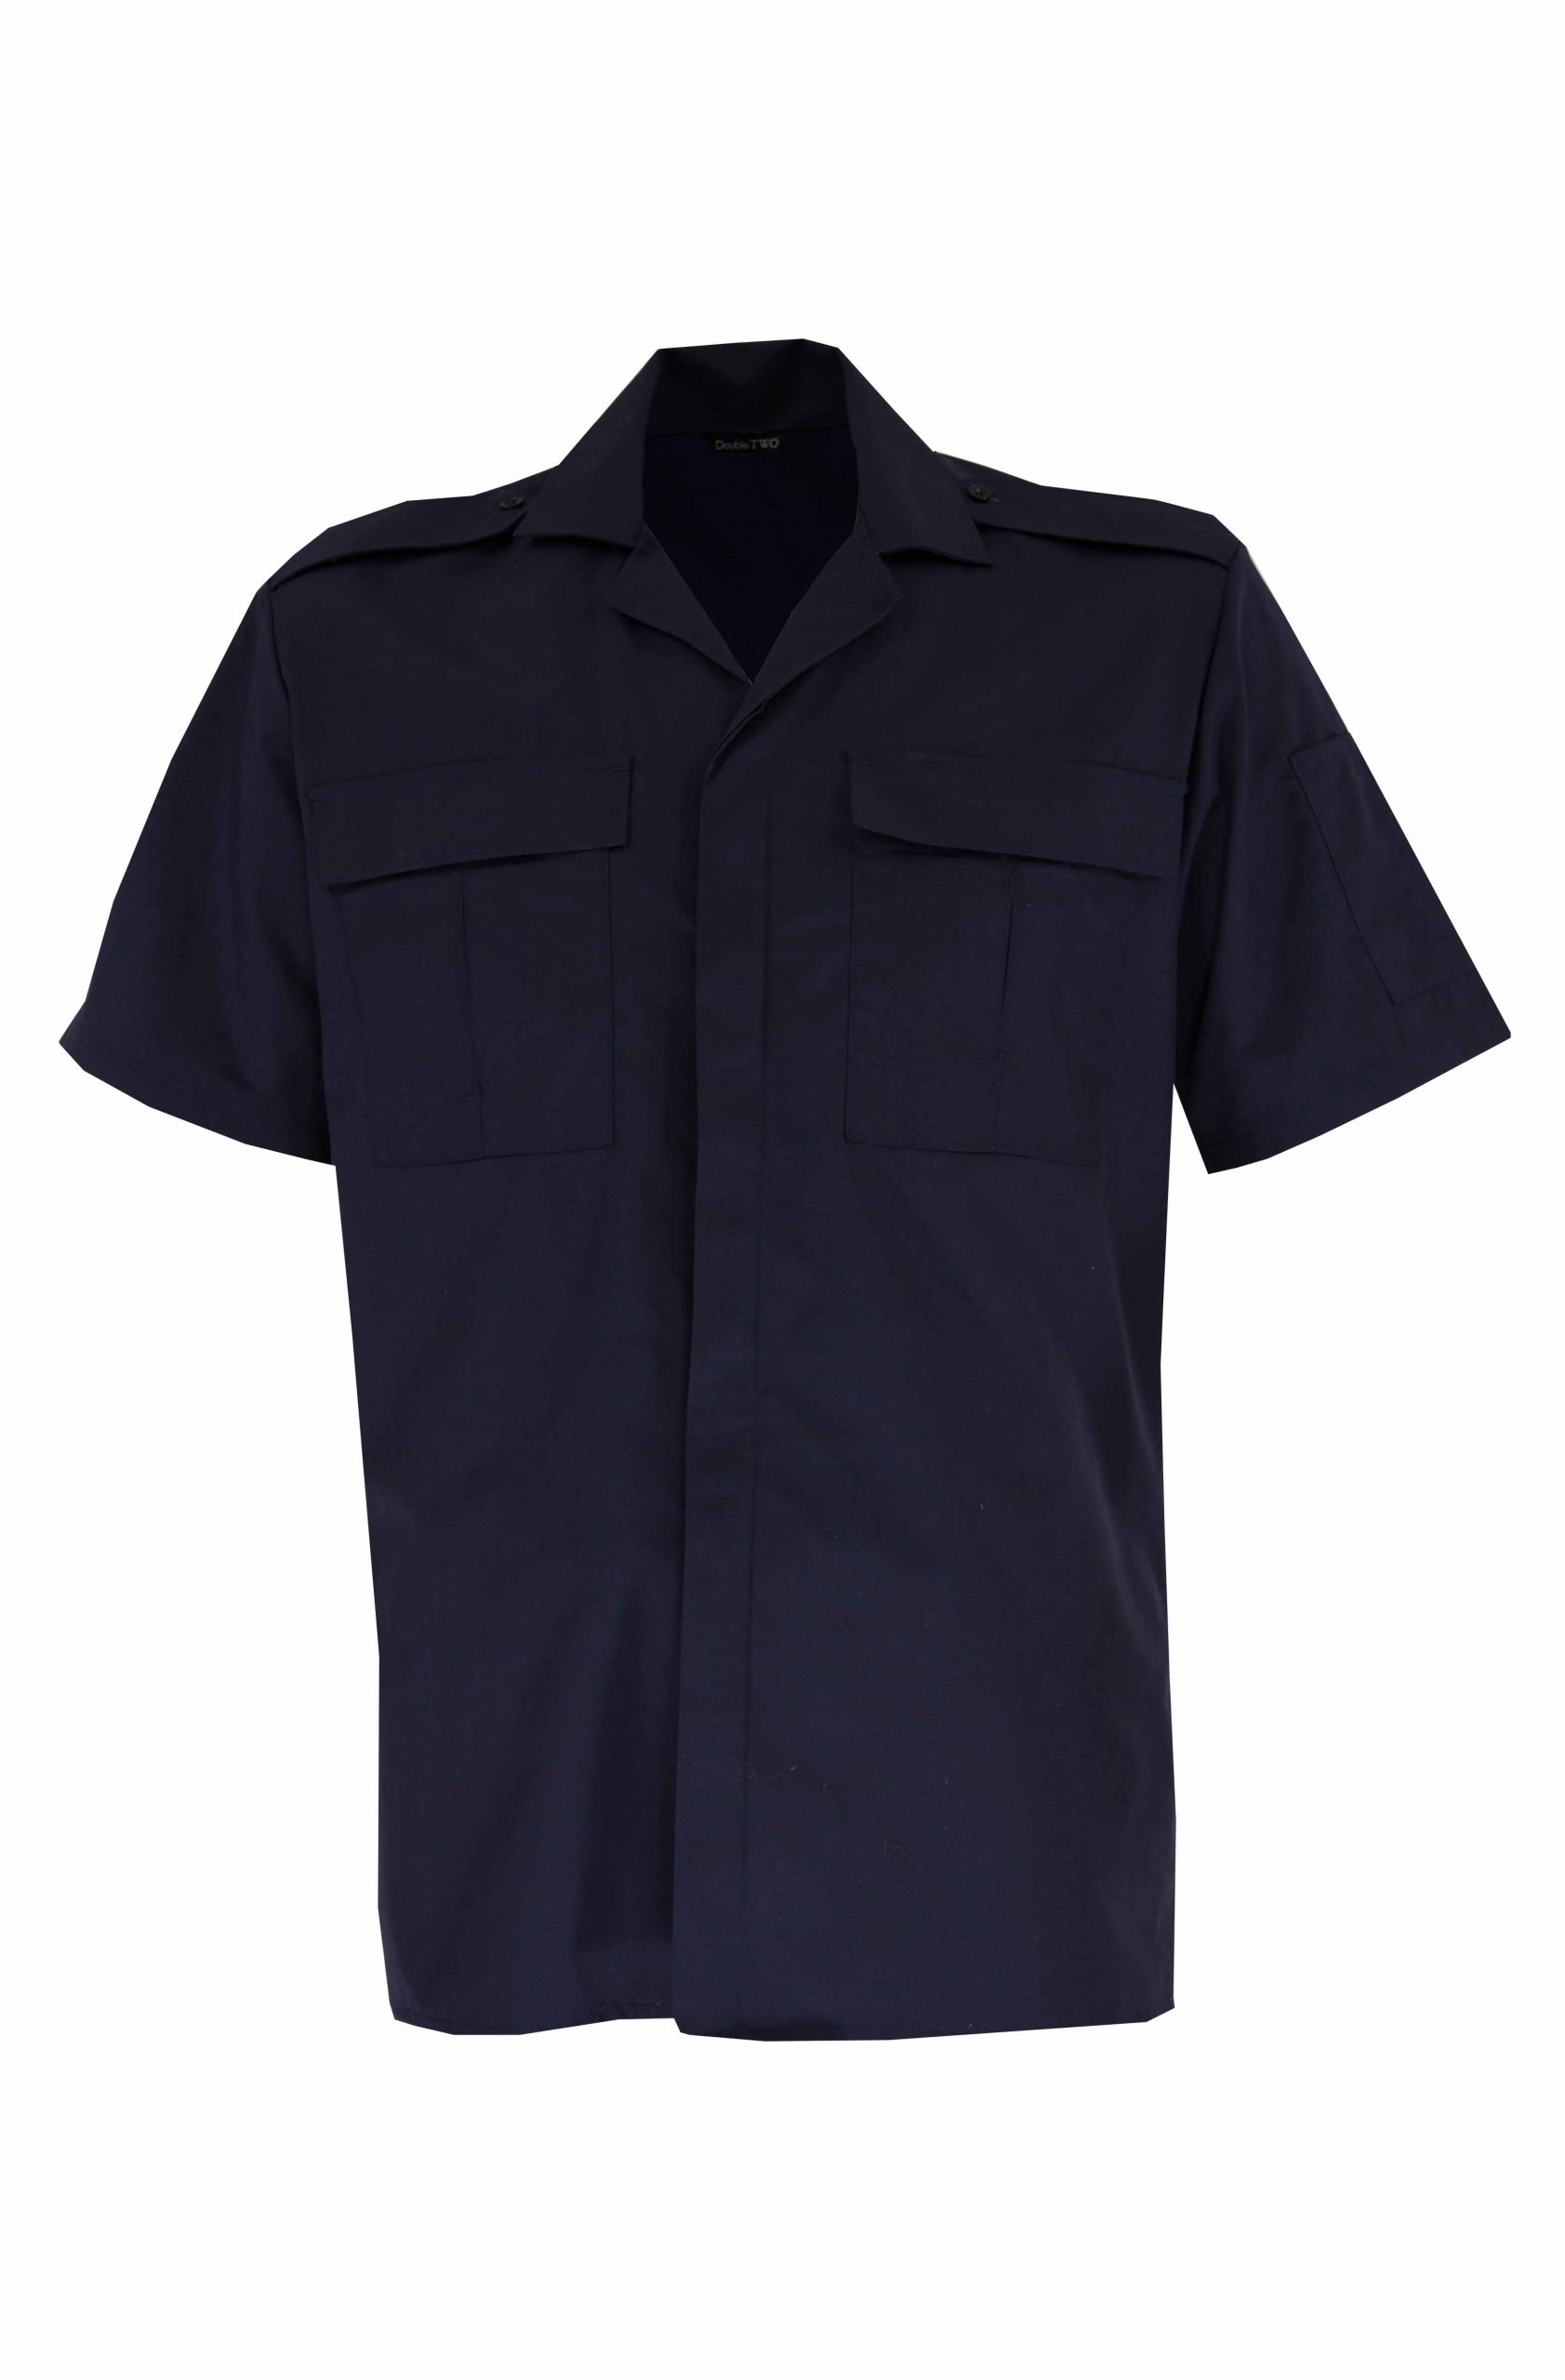 Navy Unisex Ambulance Shirt